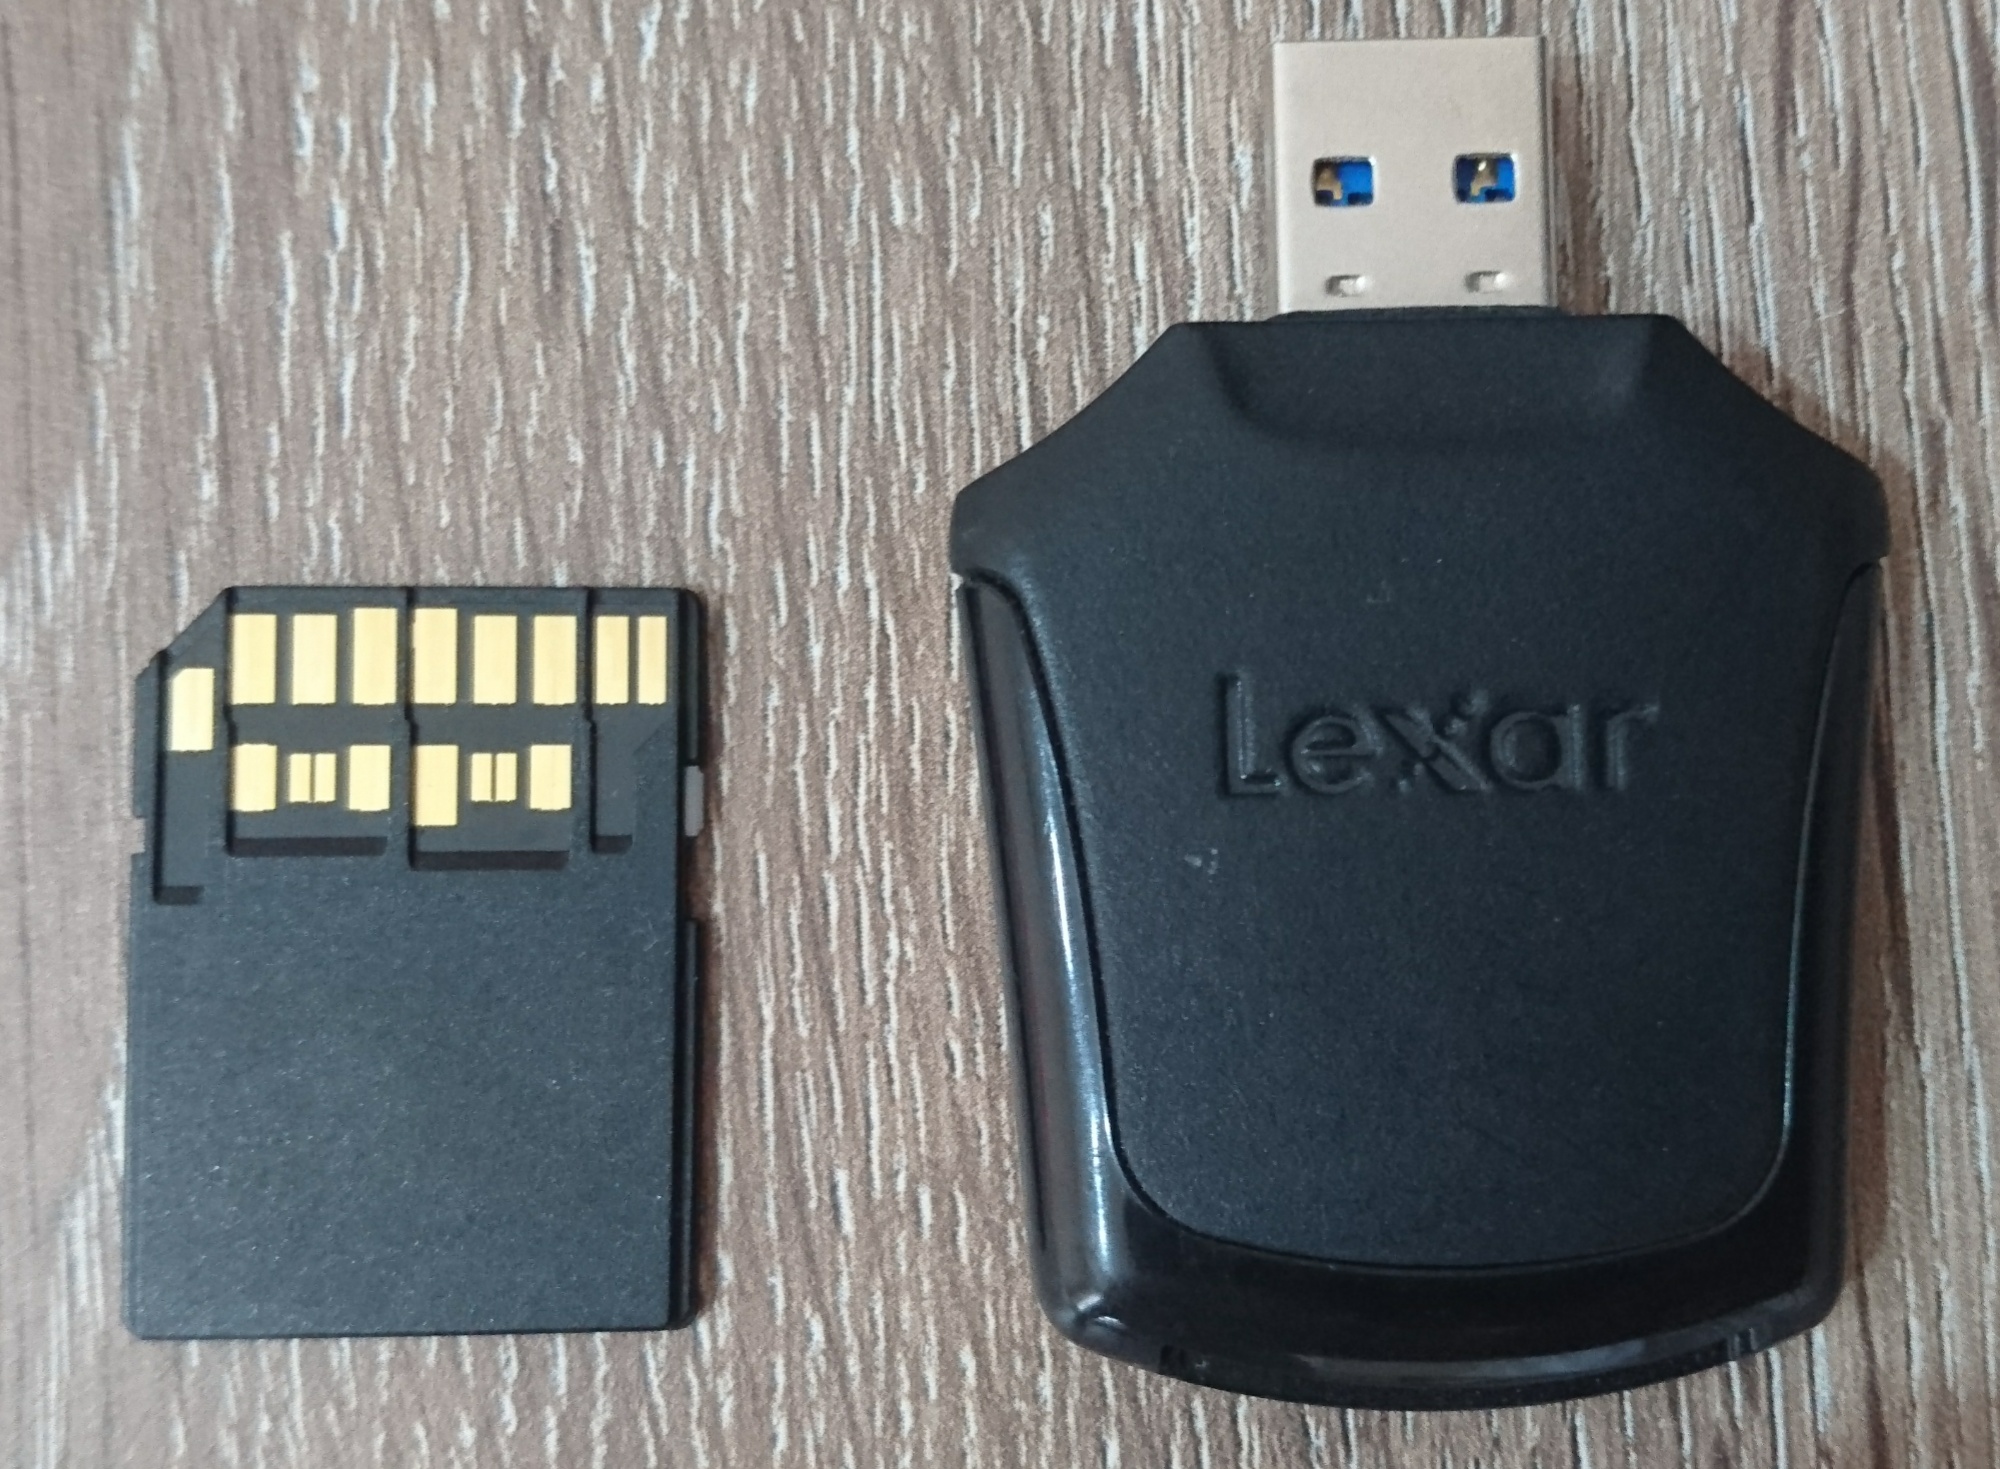 SATILIK LEXAR 2000X 64 GB 300 MB OKUMA HIZI PROFESYONEL SD KART